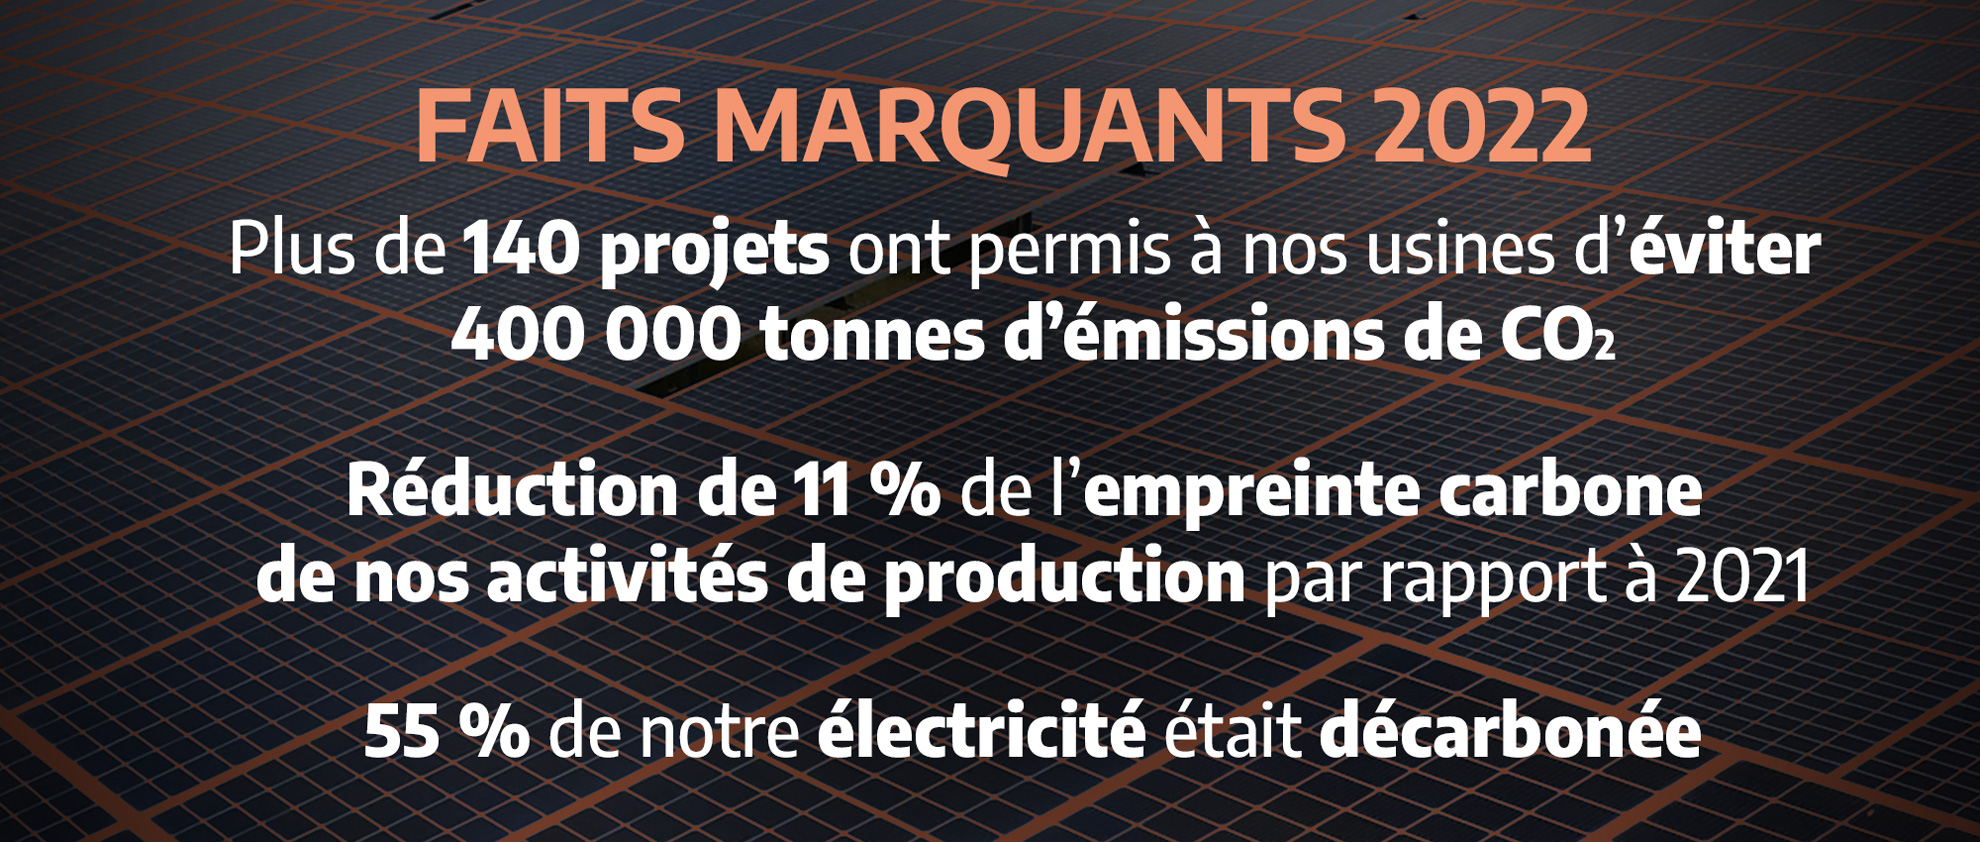 FAITS MARQUANTS 2022. Plus de 140 projets ont permis à nos usines d'éviter 400 000 tonnes d'émissions de CO2. Réduction de 11 % de l'empreinte carbone de nos activités de production par rapport à 2021. 55 % de notre élecritcité était décarbonée.